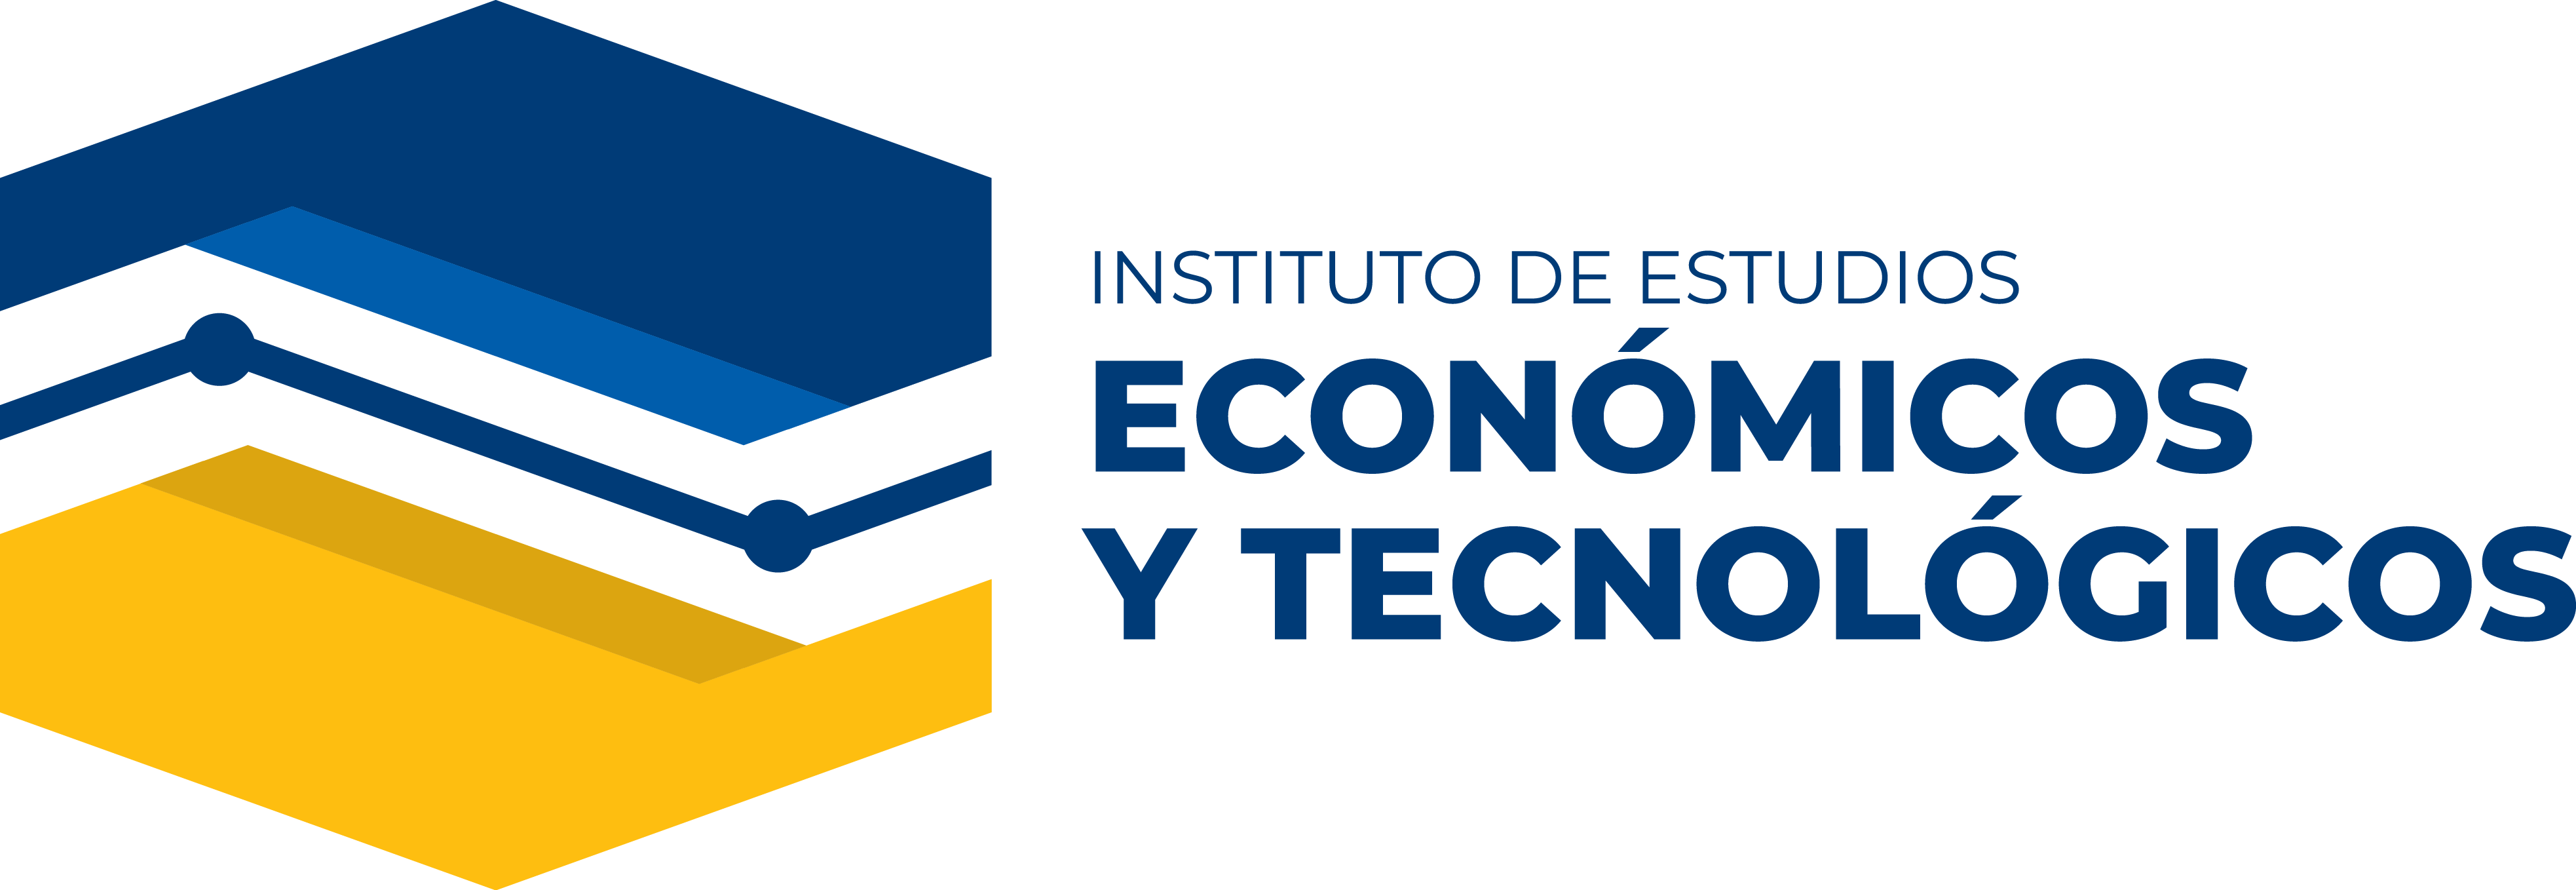 INSTITUTO DE ESTUDIOS ECONÓMICOS Y TECNOLÓGICOS